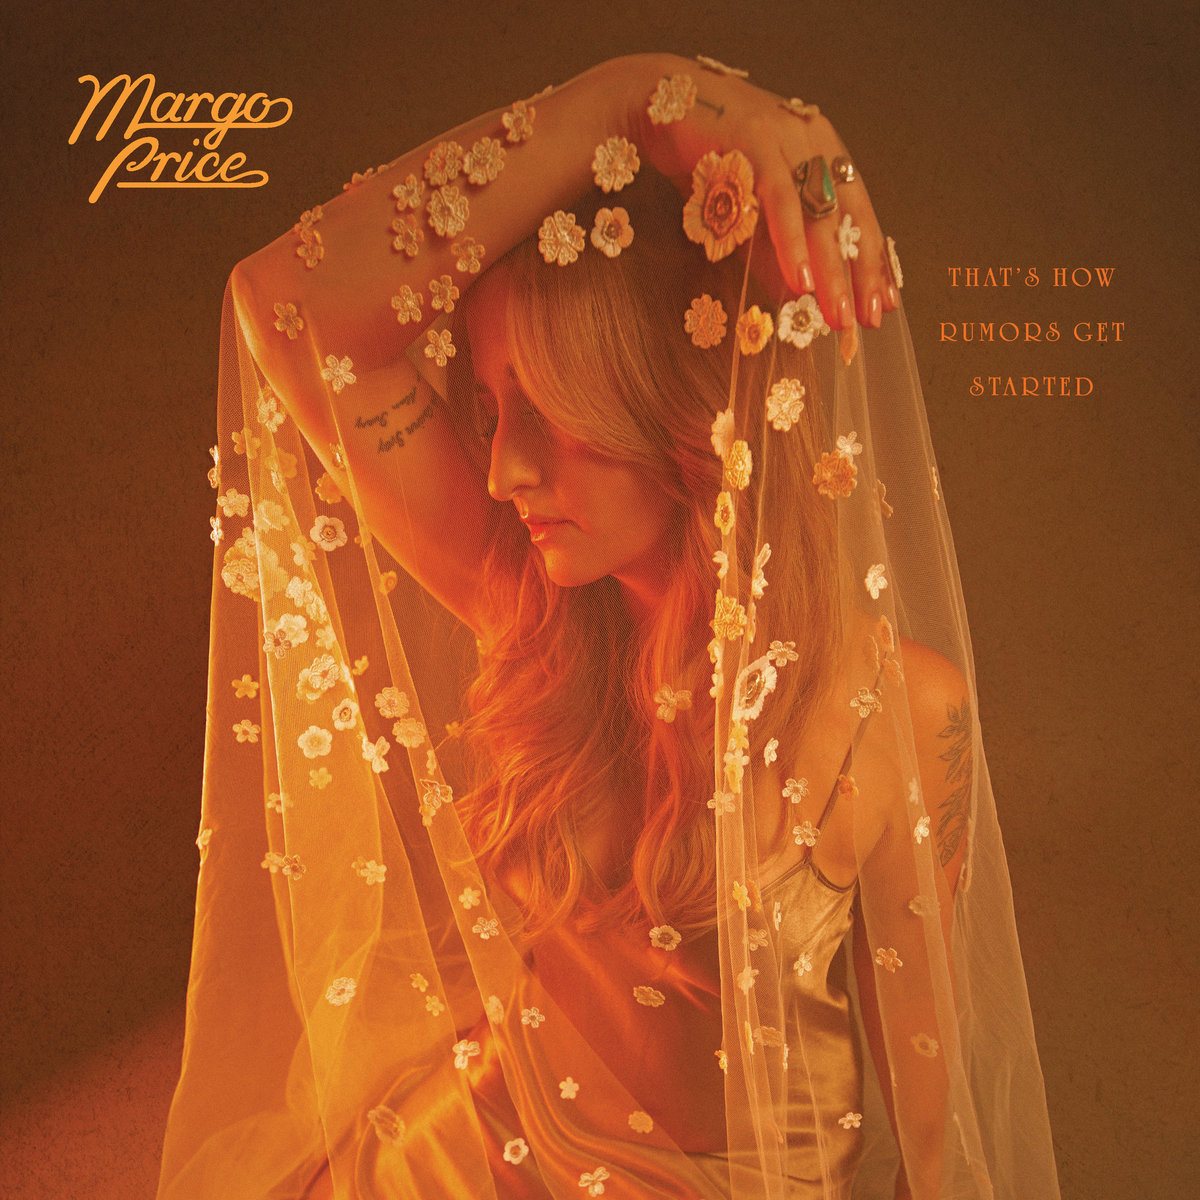 imagen 1 de Margo Price anuncia nueva fecha de lanzamiento para su próximo álbum.